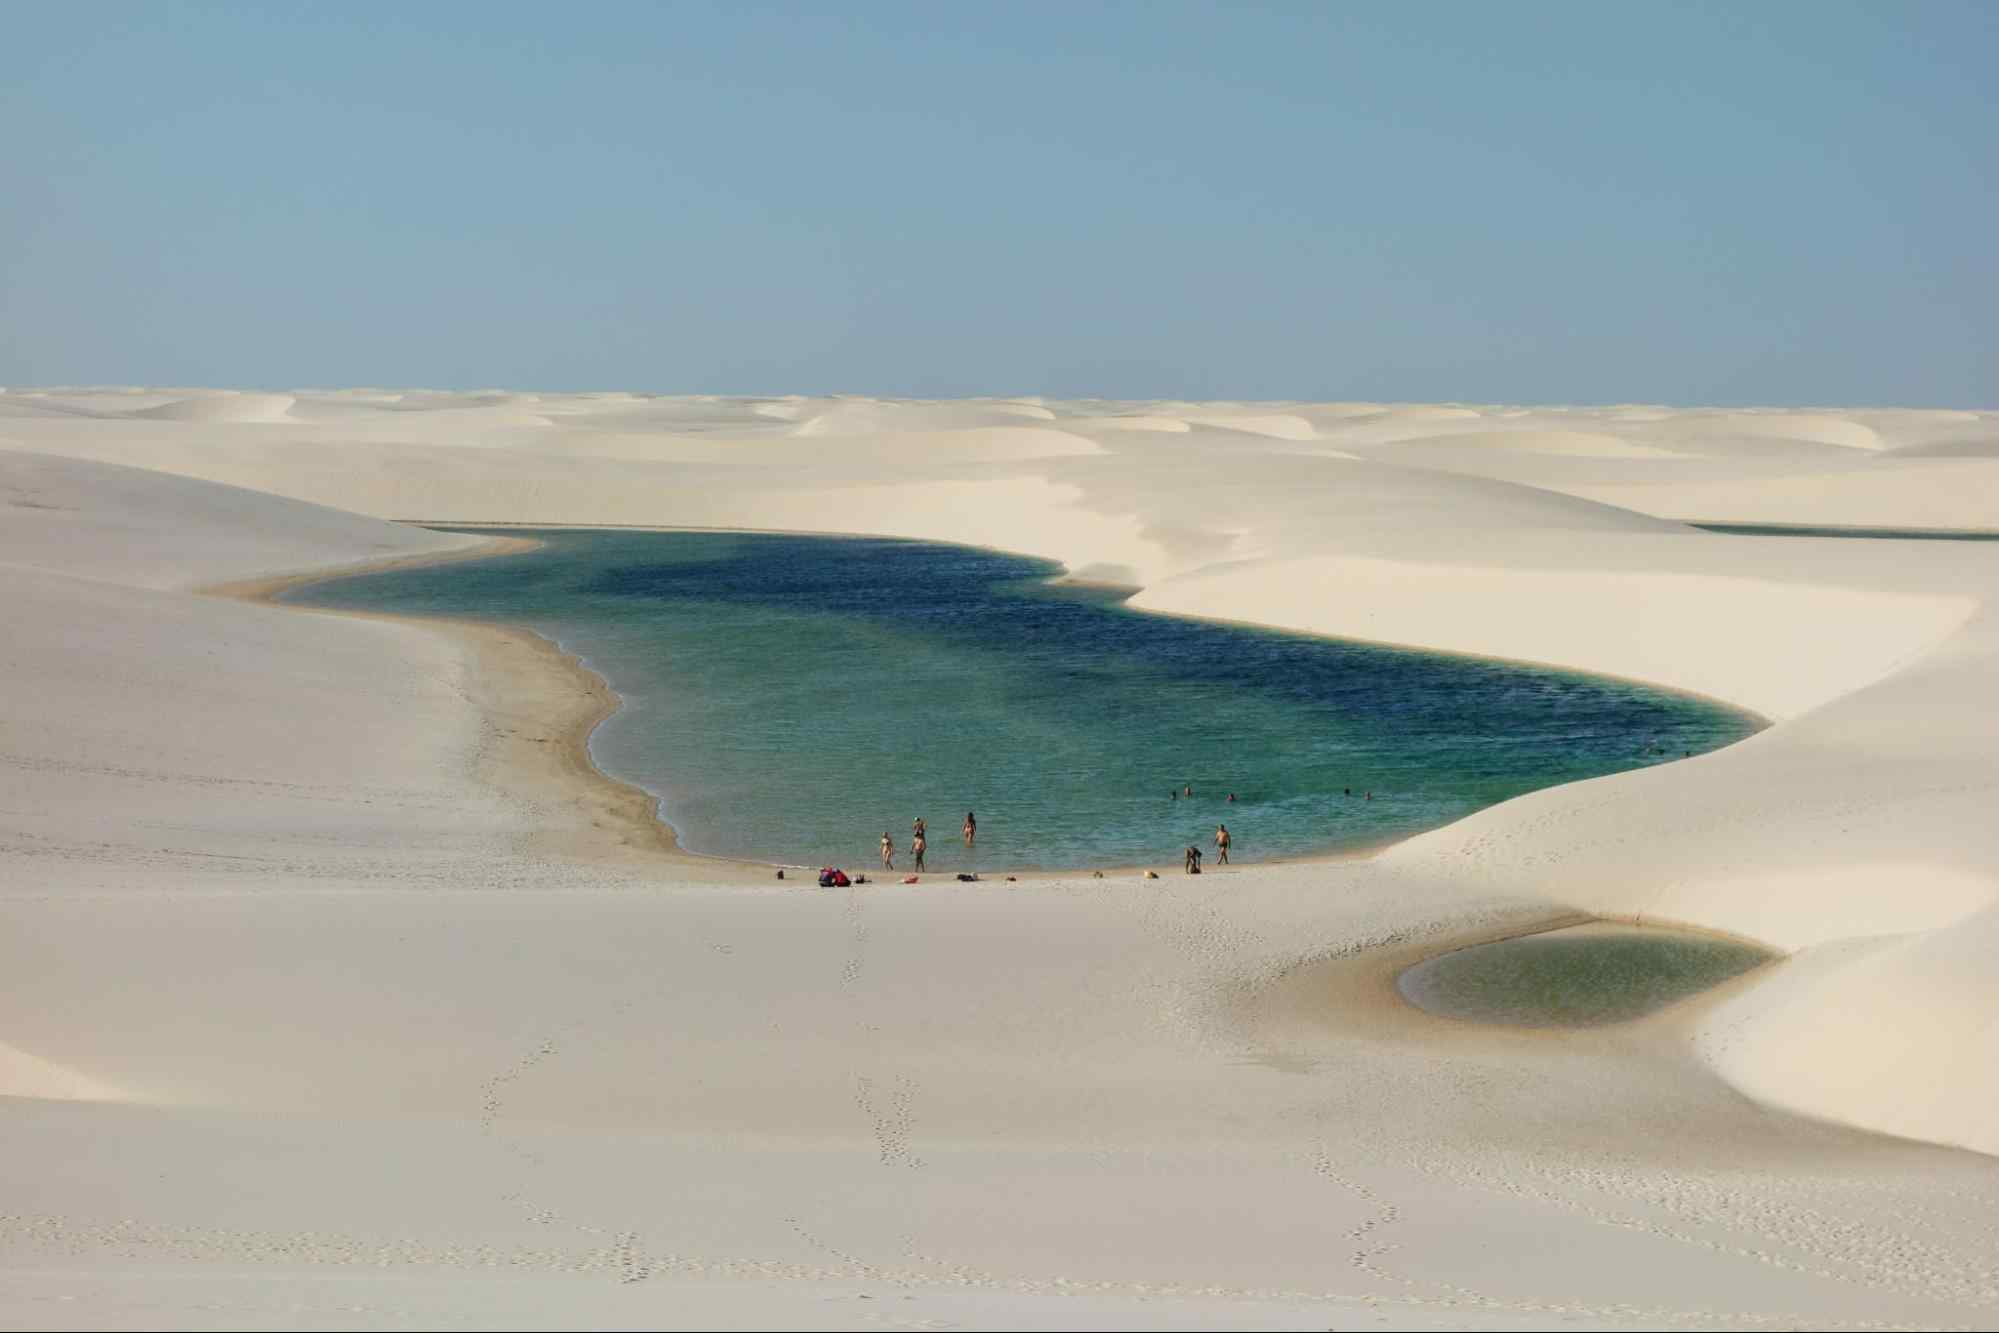 Vista aérea de uma das grandes lagoas que se formam nos Lençóis Maranhenses, dunas de areia clara ao redor da água em tons de verde e azul.